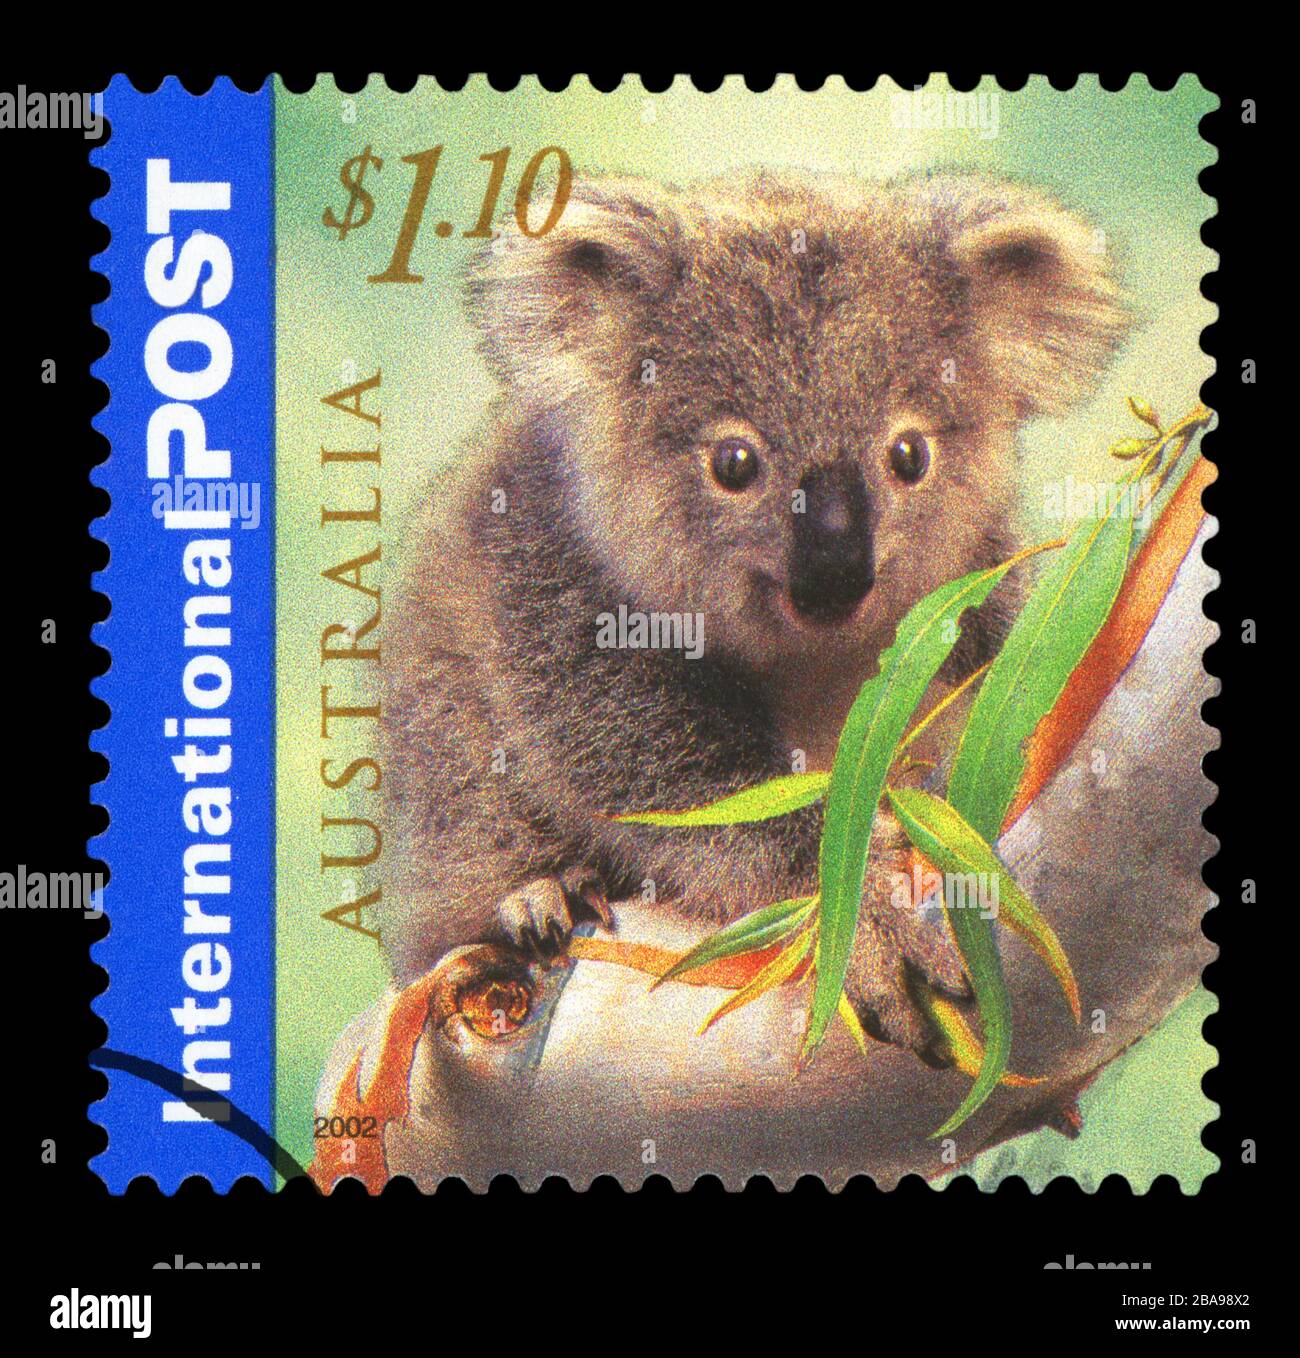 AUSTRALIEN - CIRCA 2002: Eine in AUSTRALIEN gedruckte Briefmarke zeigt die Koala Eating, International Post Series, ca. 2002 Stockfoto